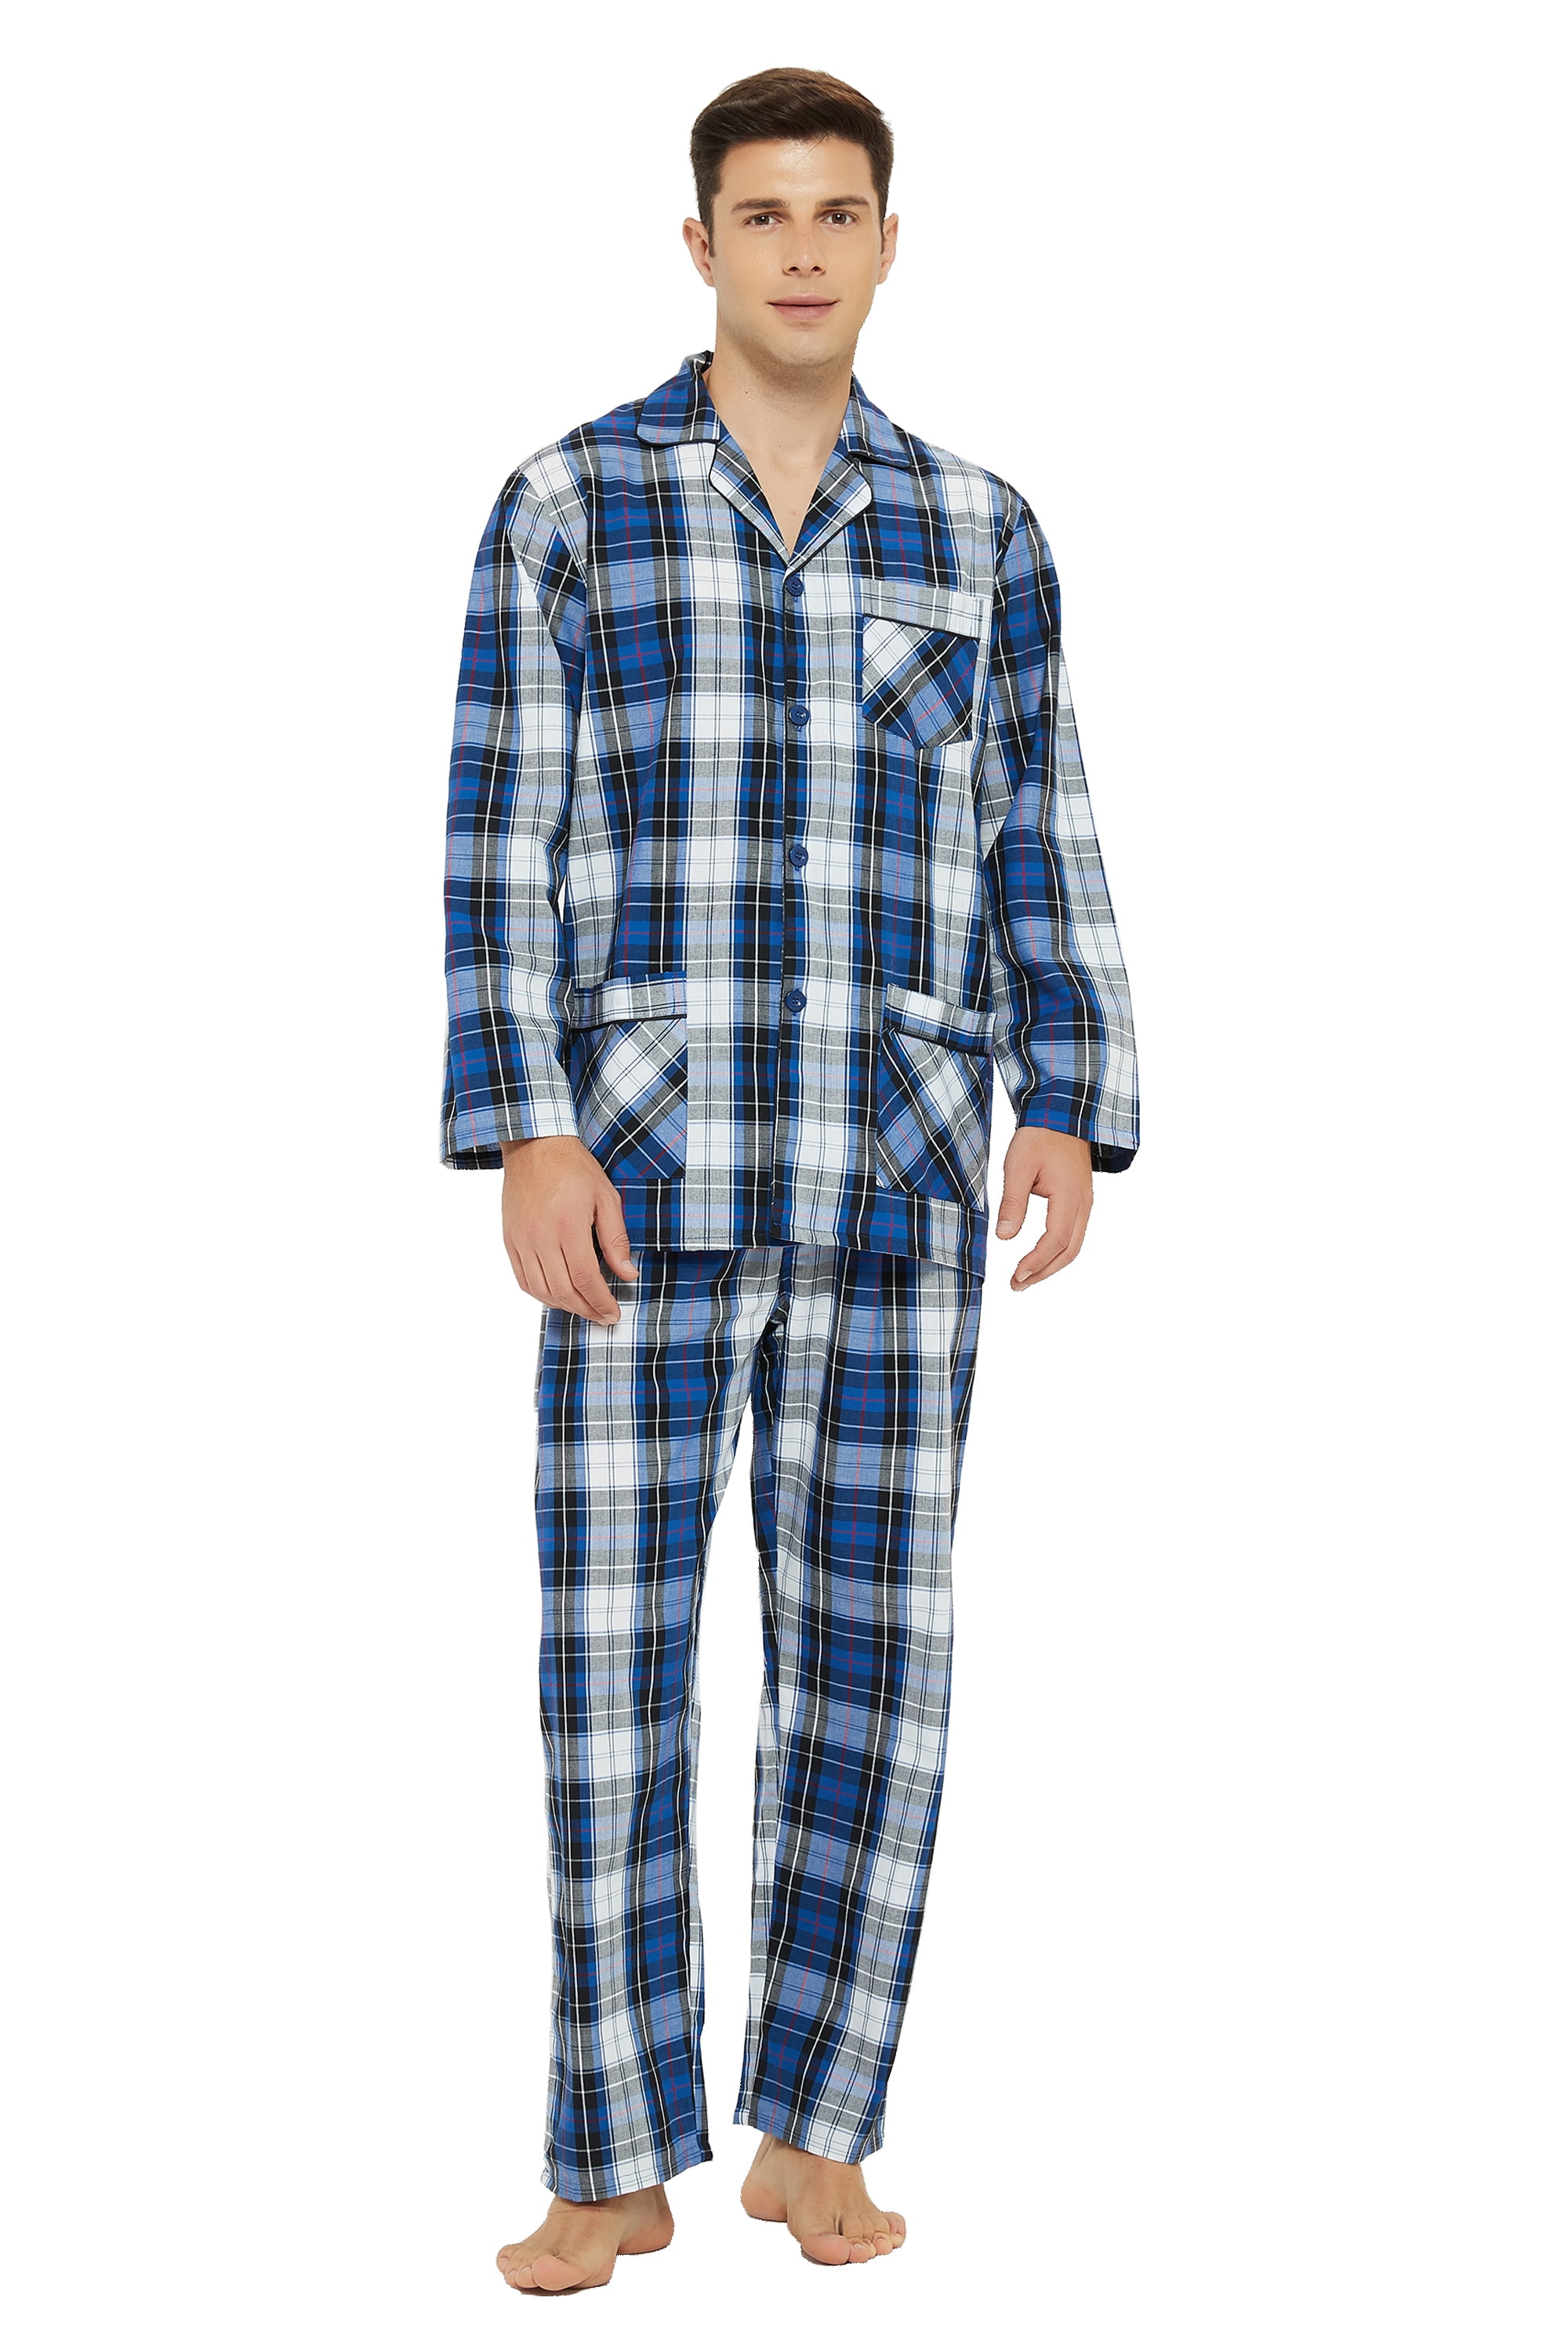 GLOBAL Mens Pajamas Set 100% Cotton Yarn Drawstring Sleepwear Set with ...